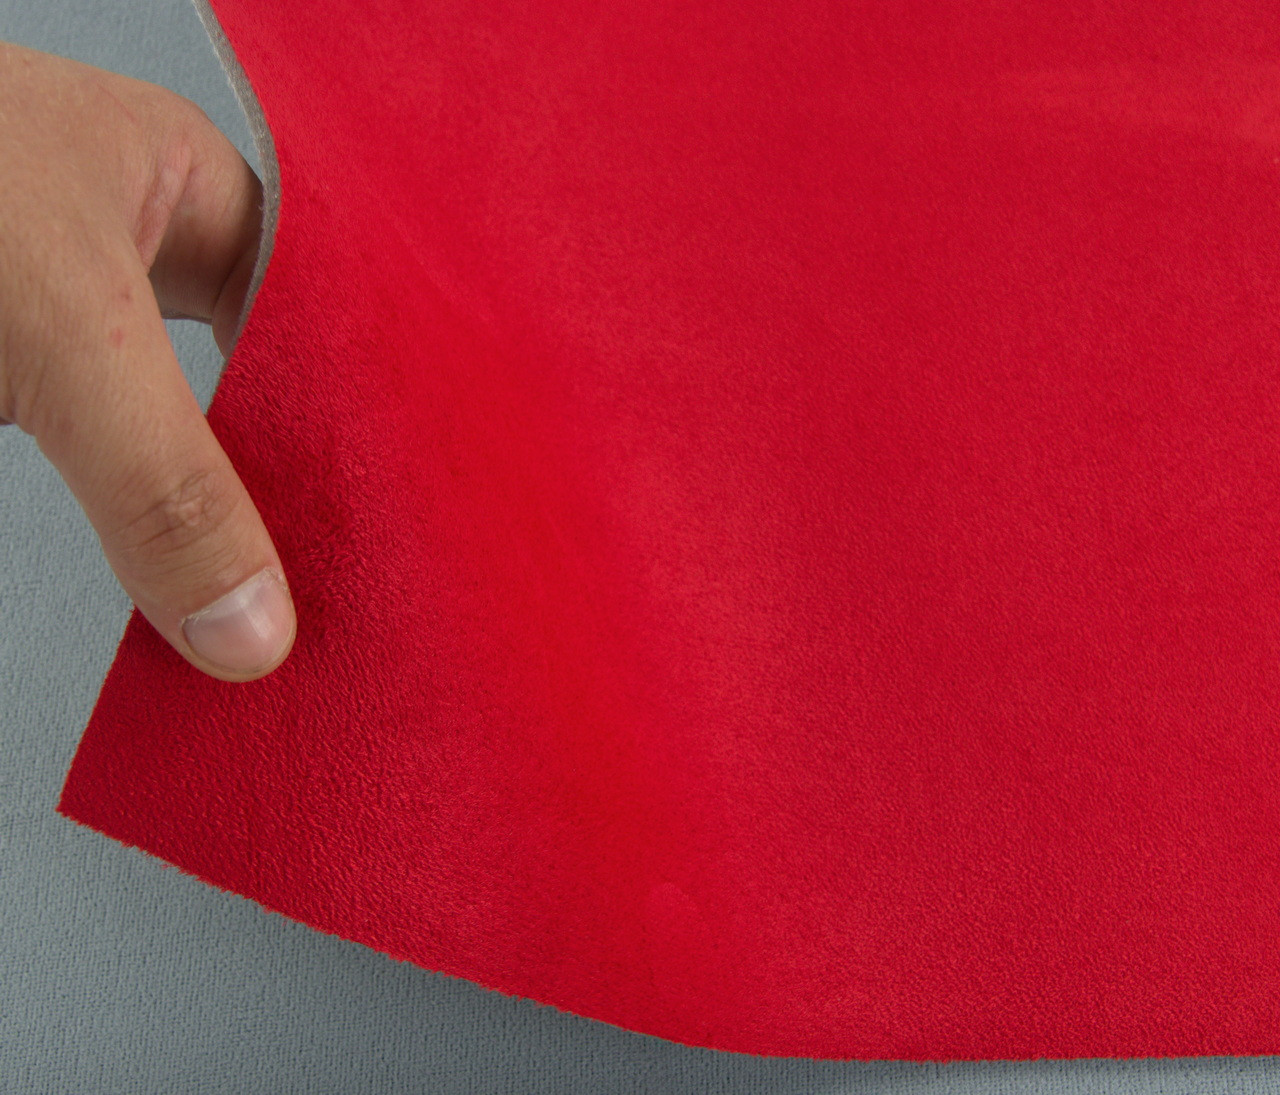 Автомобільна тканина Антара яскраво-червона, на поролоні та сітці, товщина 4мм, ширина 145см, Туреччина детальна фотка